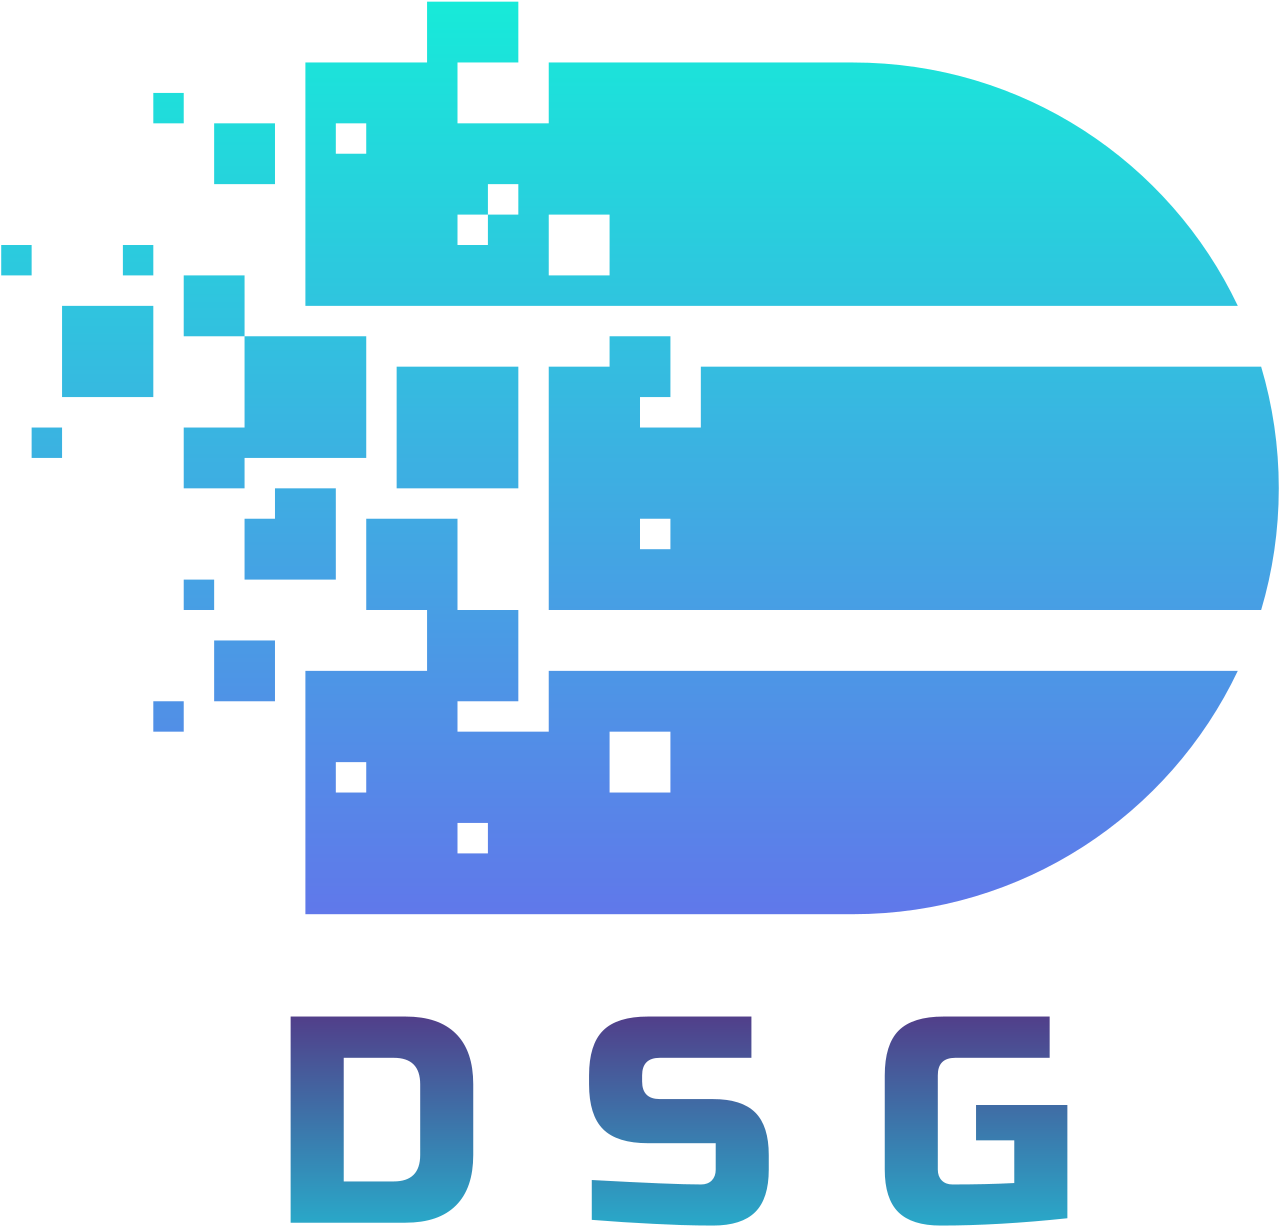 DSG's logo